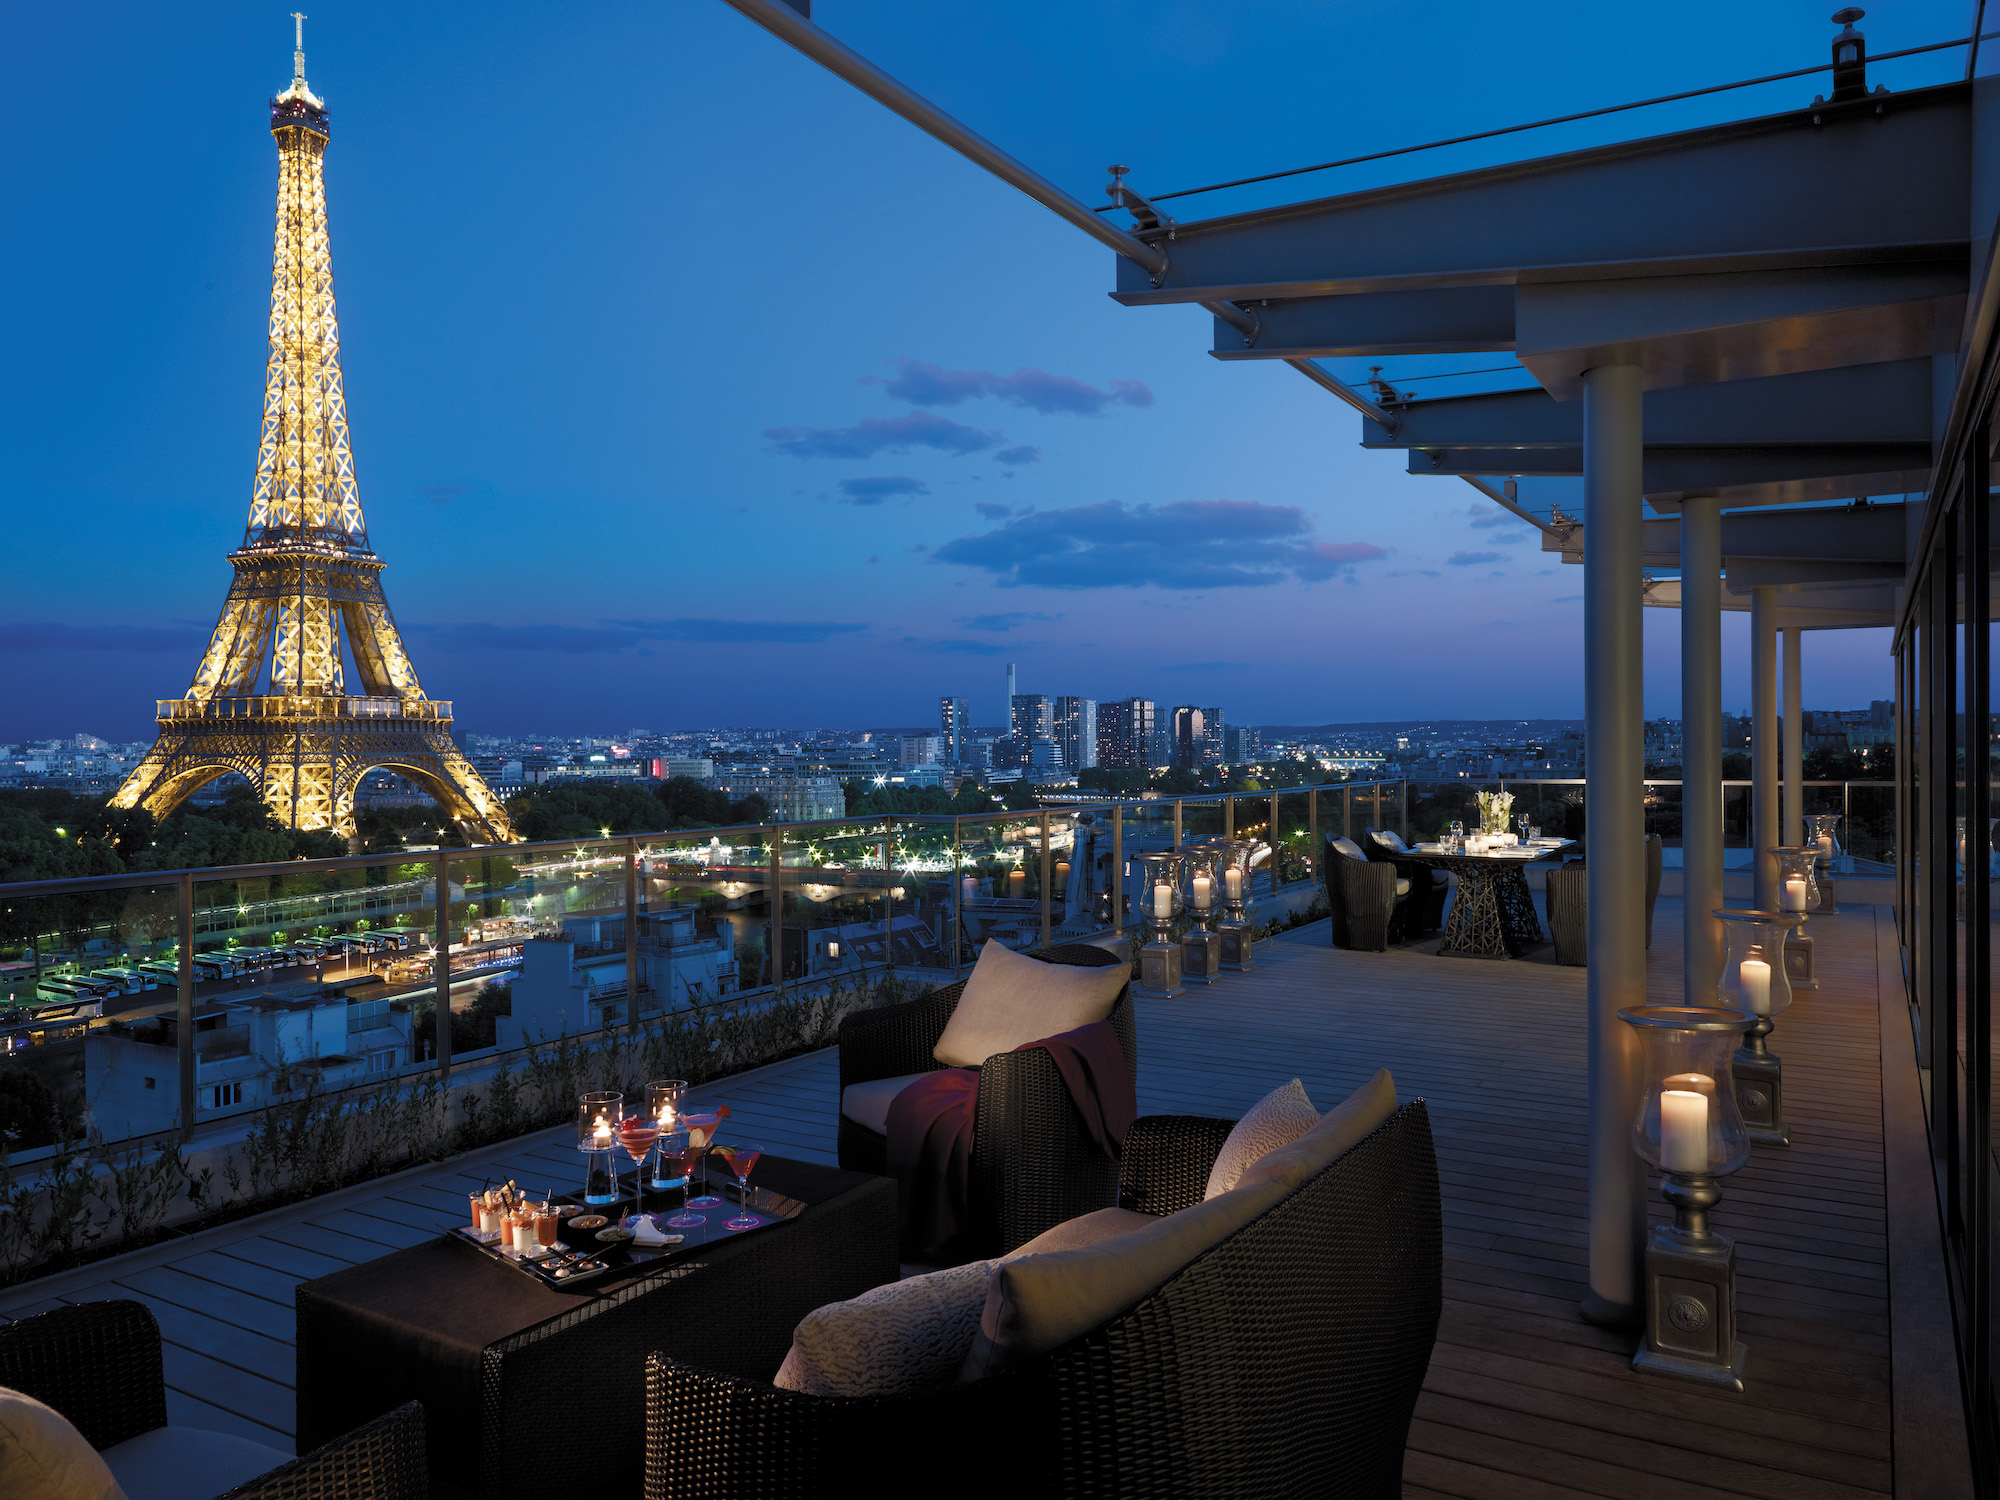 هتل شانگریلا علاوه بر سایر امکانات لوکس و رویایی امکان تماشای طلوع آفتاب را در کنار برج ایفل هم به شما می دهد